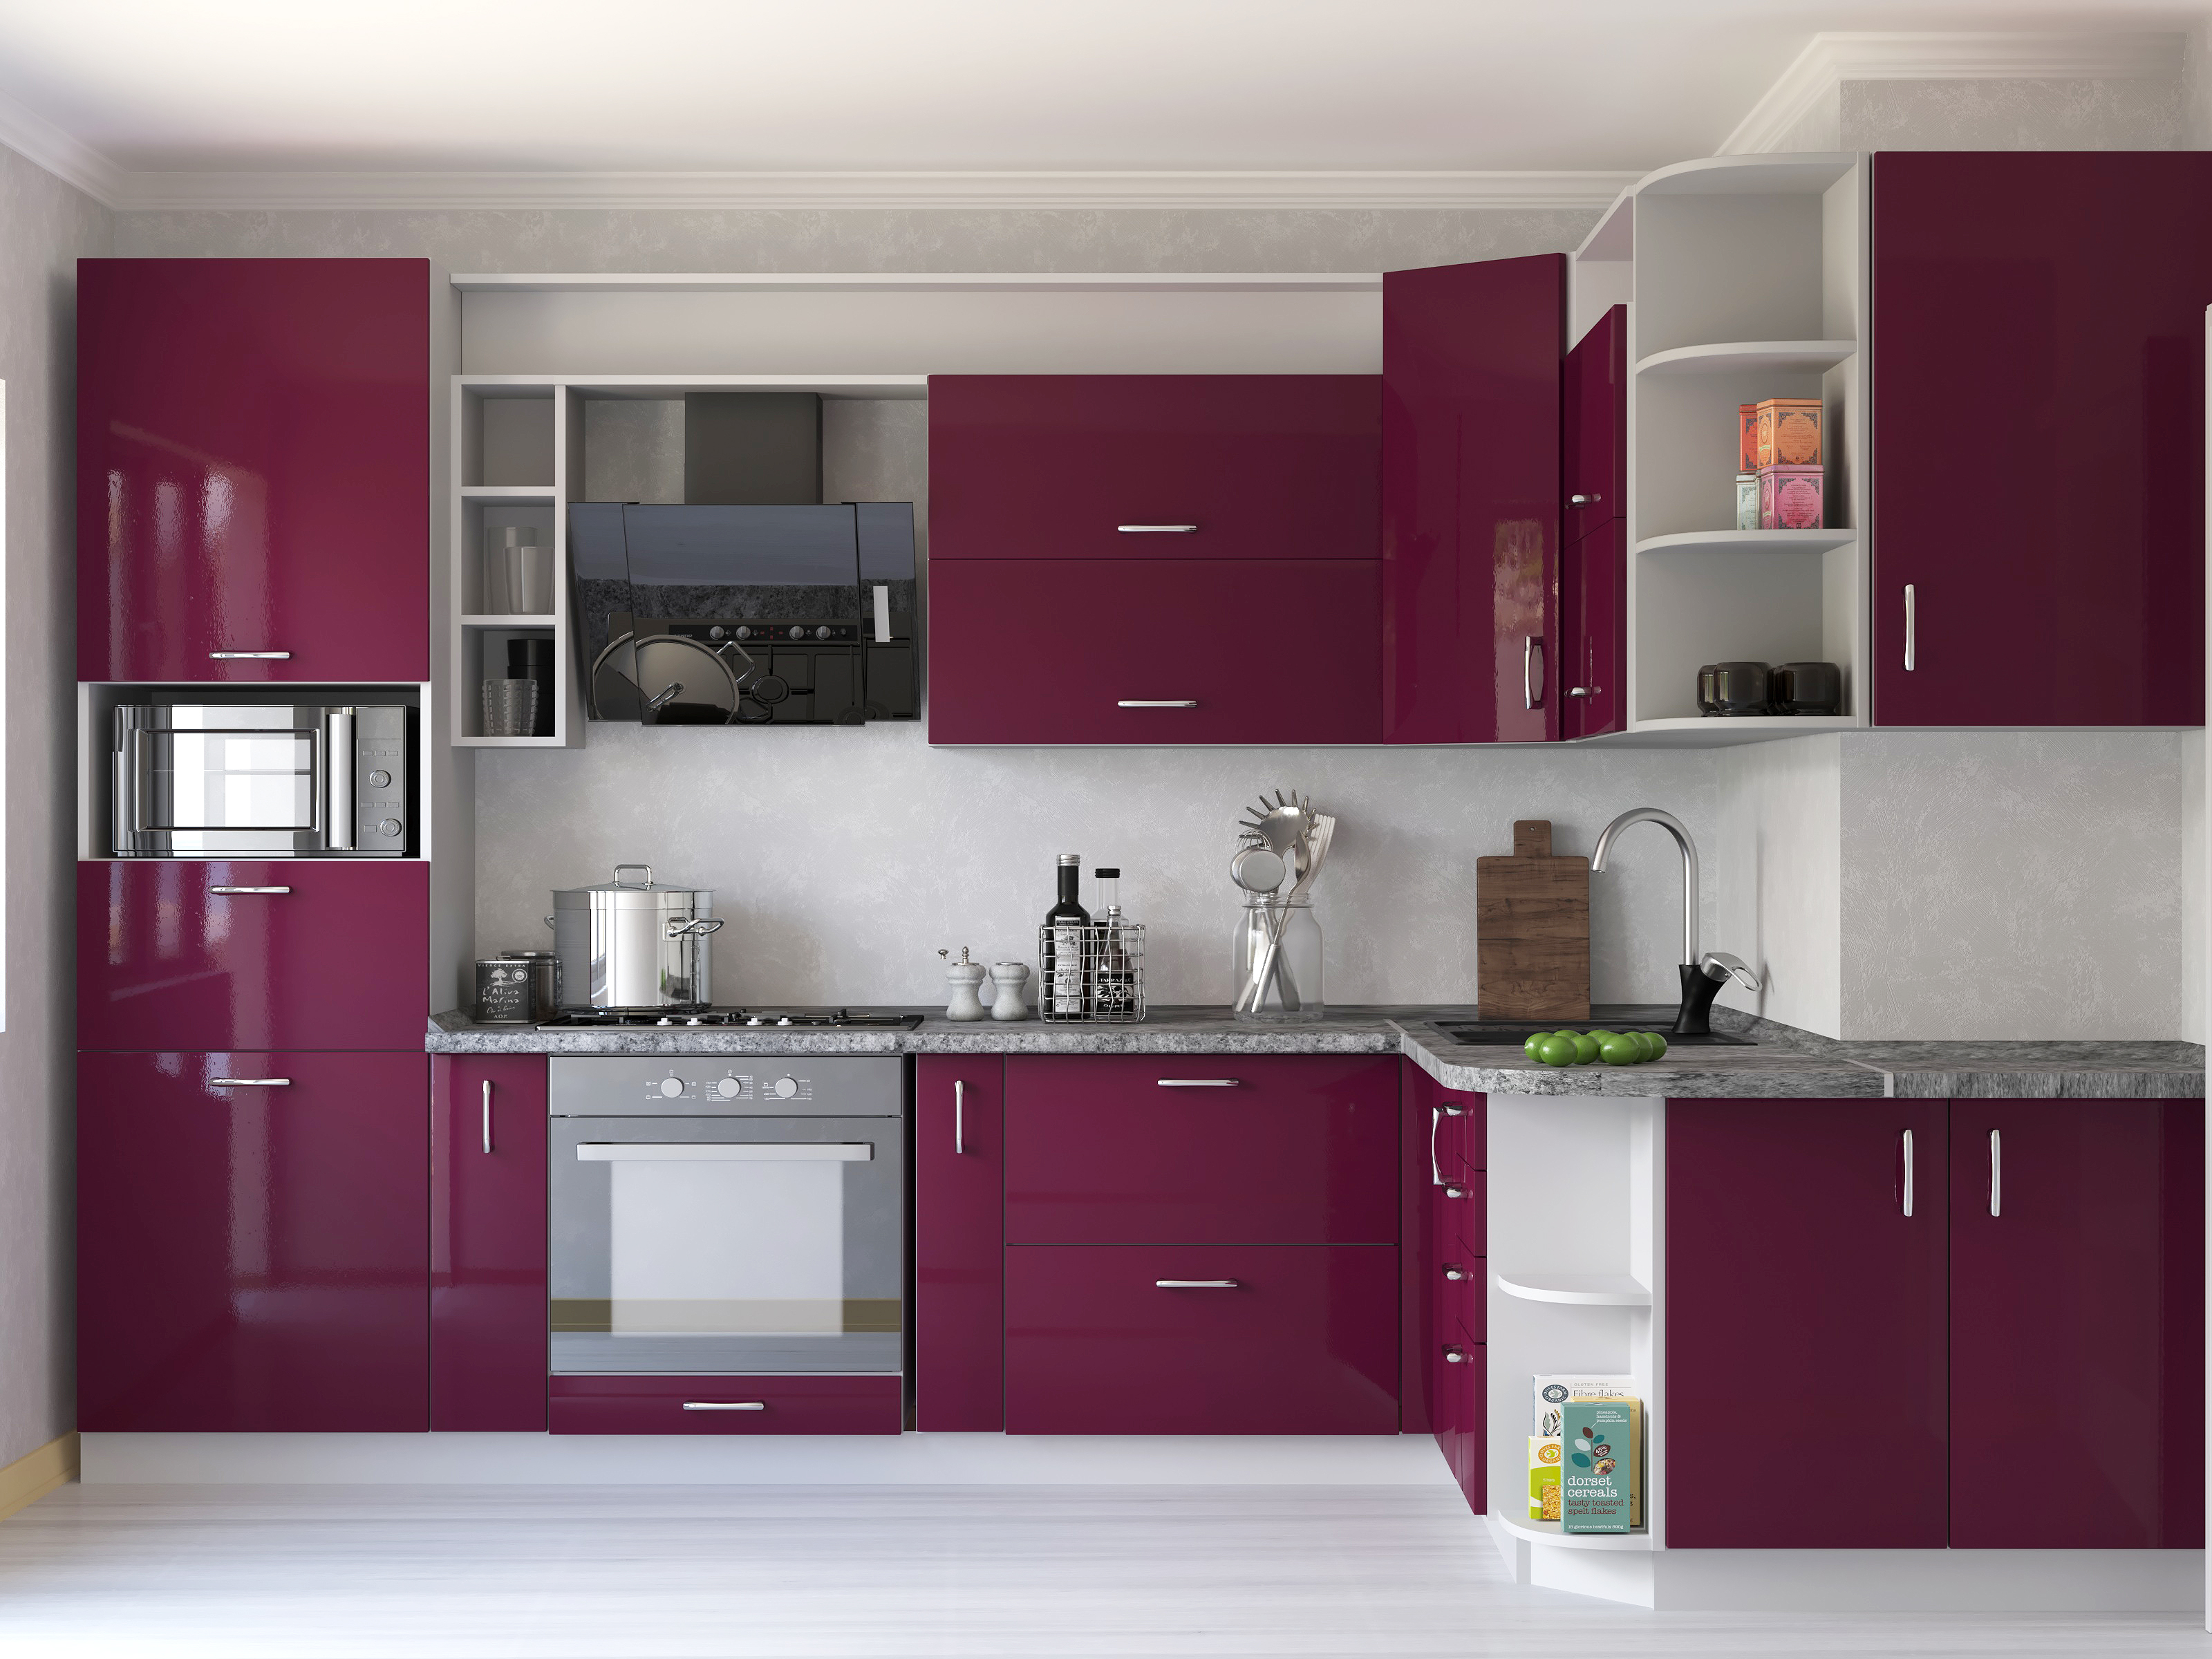  kitchen designs modular